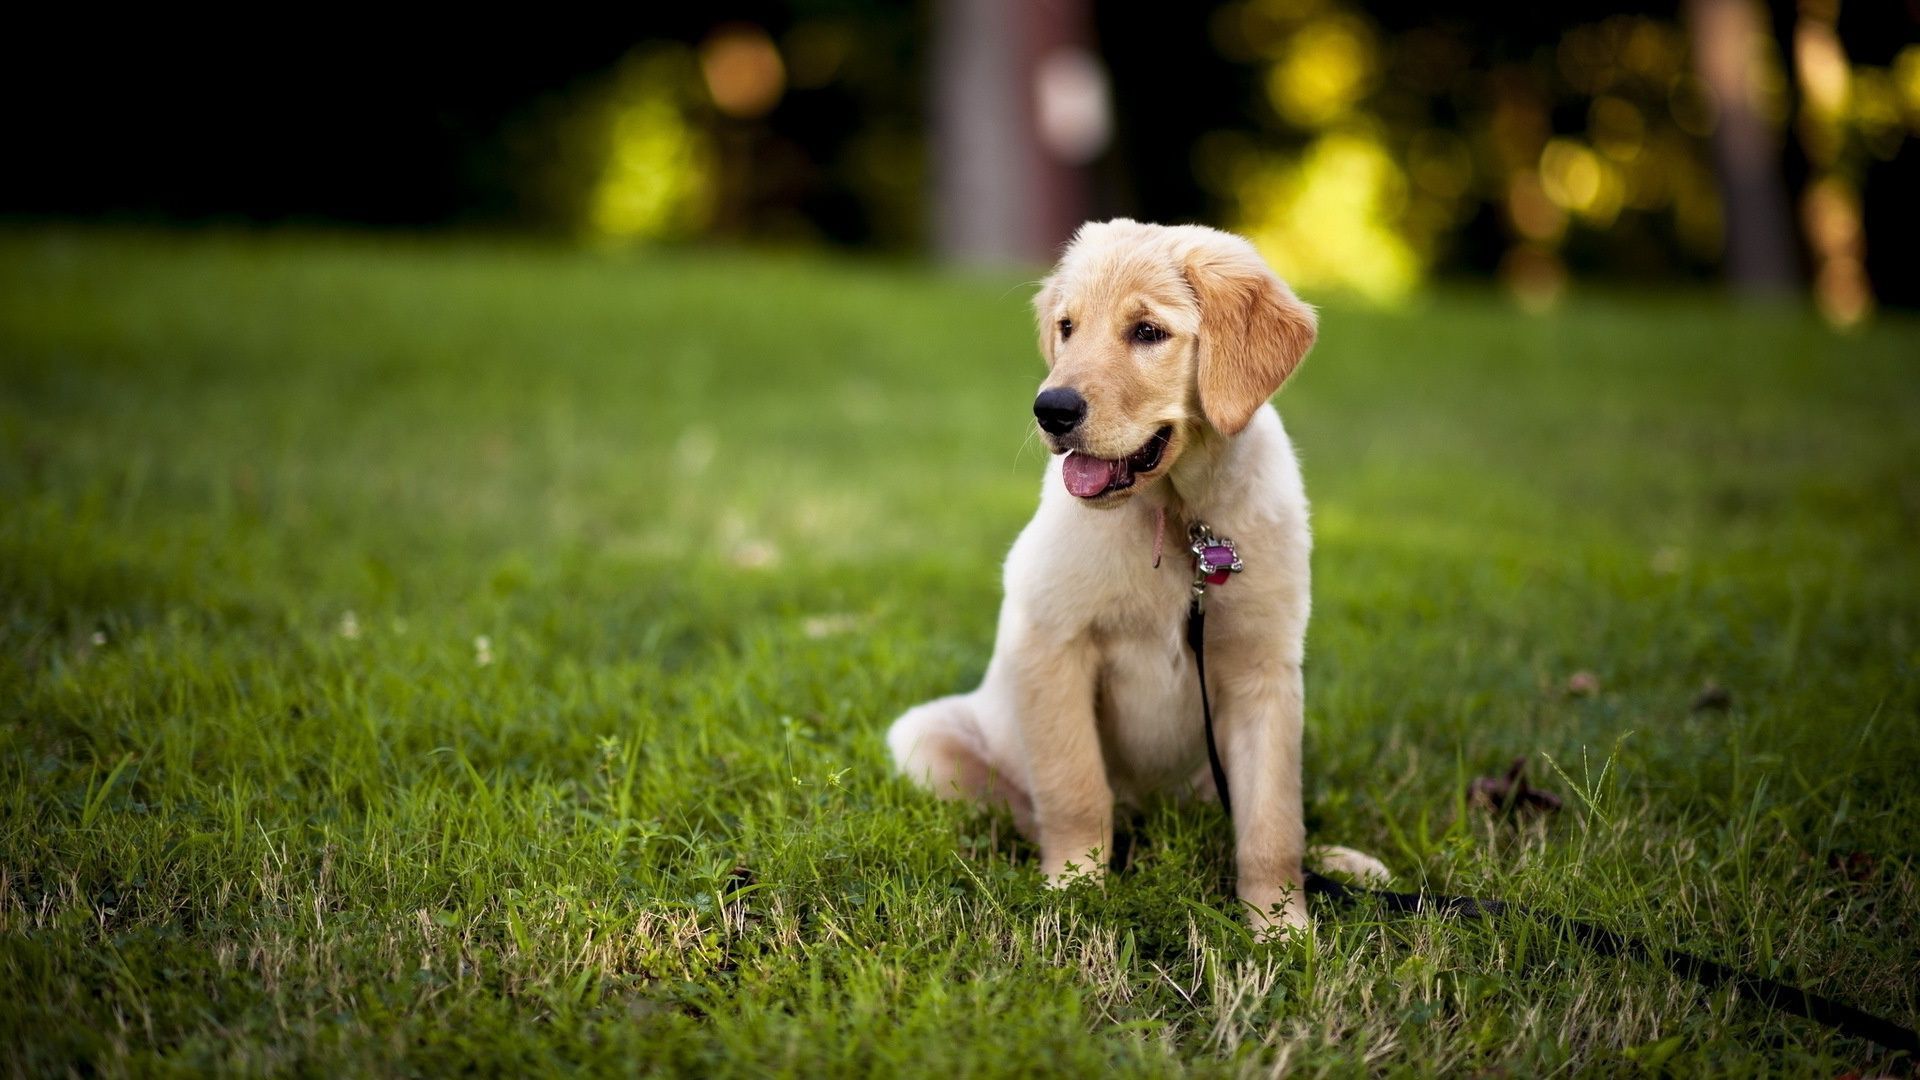 Top Lab Puppy Desktop Pics Images for Pinterest